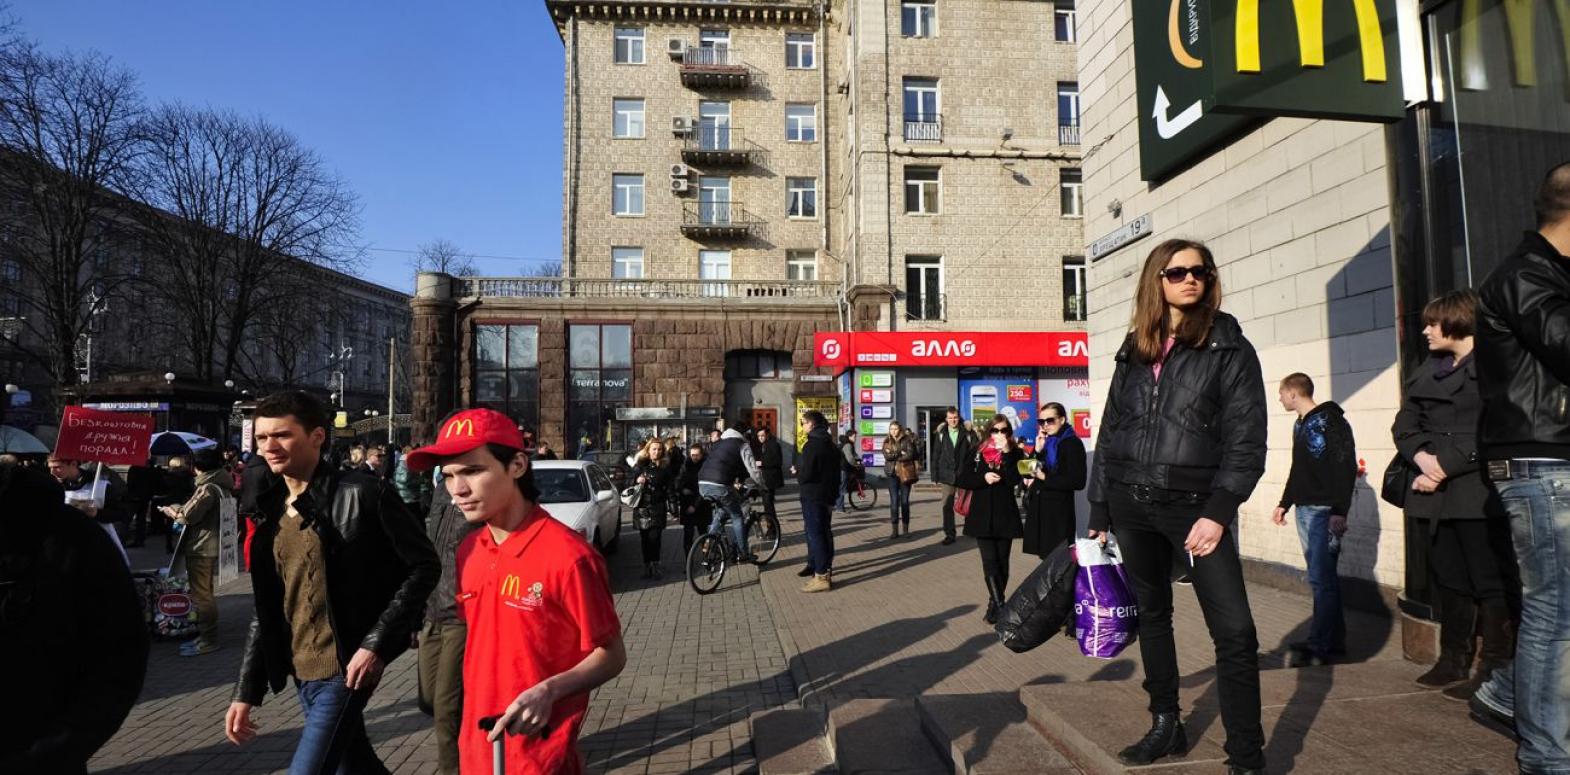 McDonalds, Zara и IKEA. Вернутся ли западные бренды в Украину